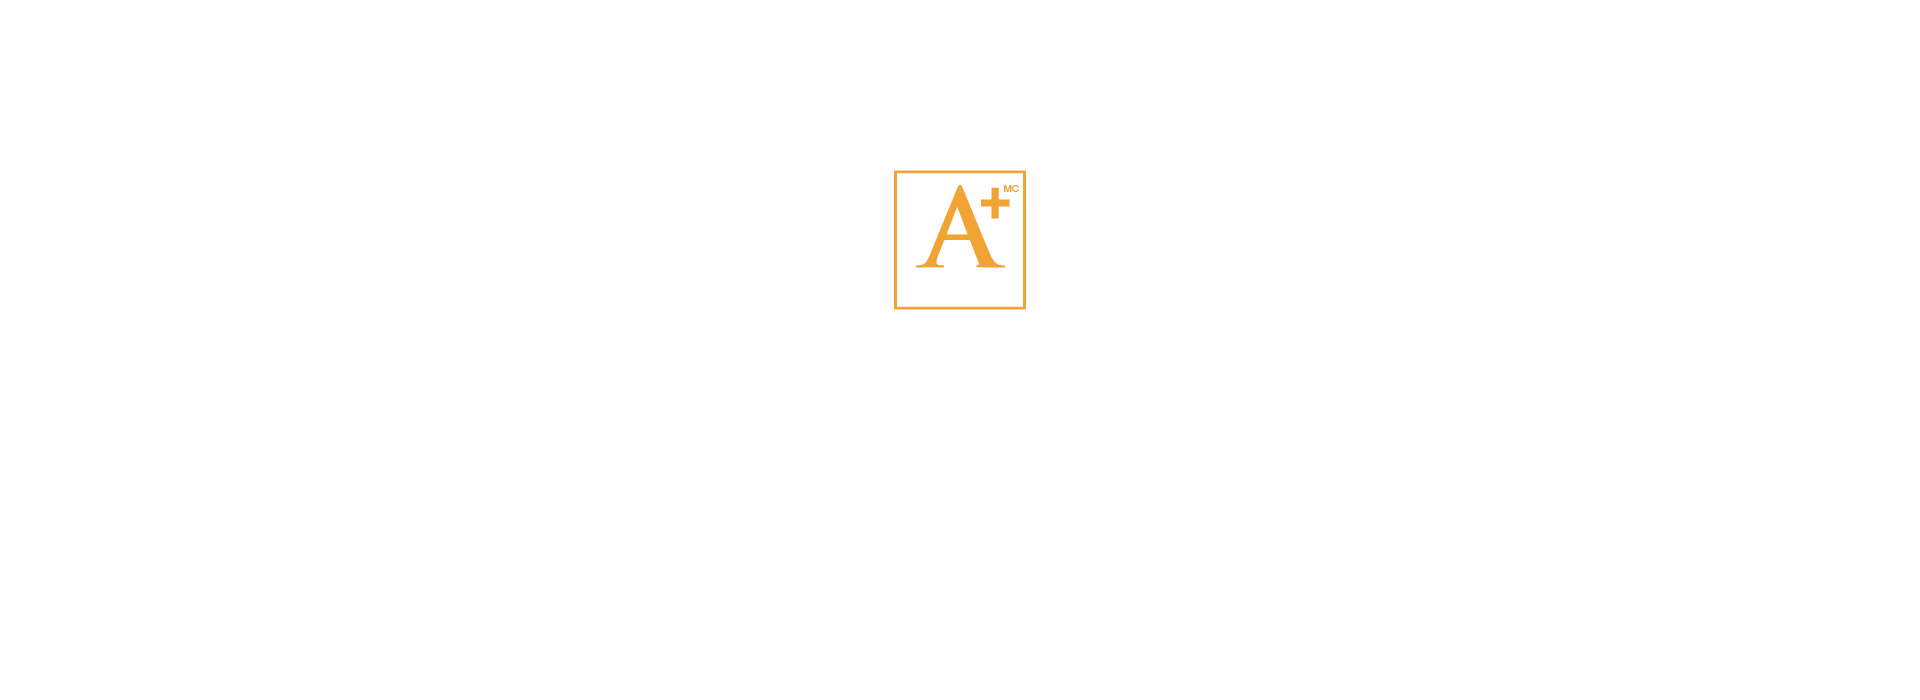 2022 Awards